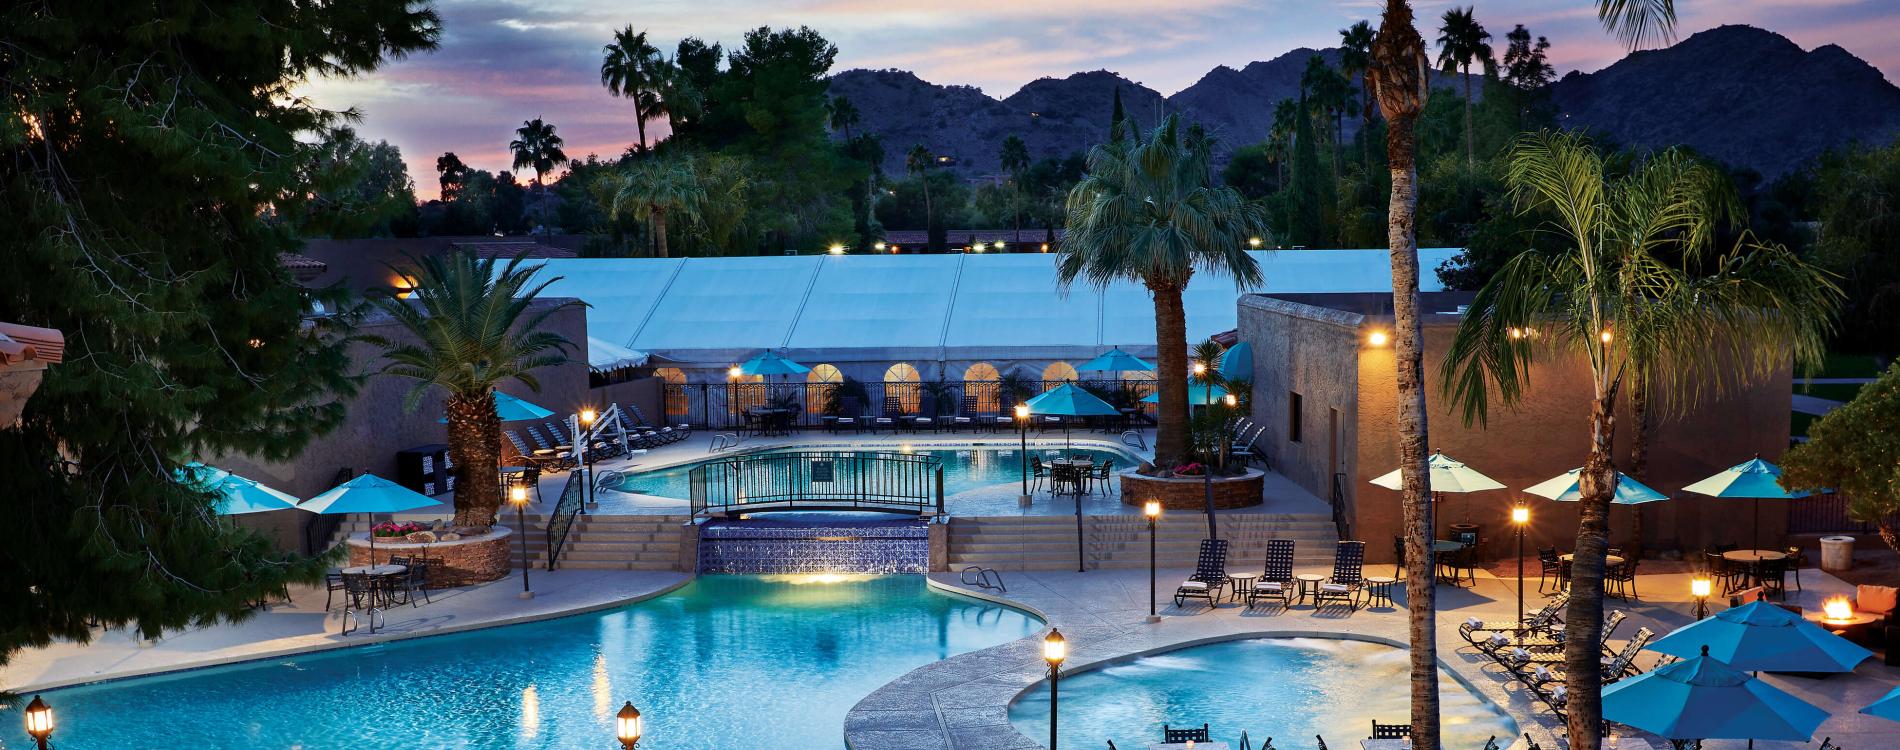 The Scottsdale Plaza Resort & Villas, in Scottsdale, United States